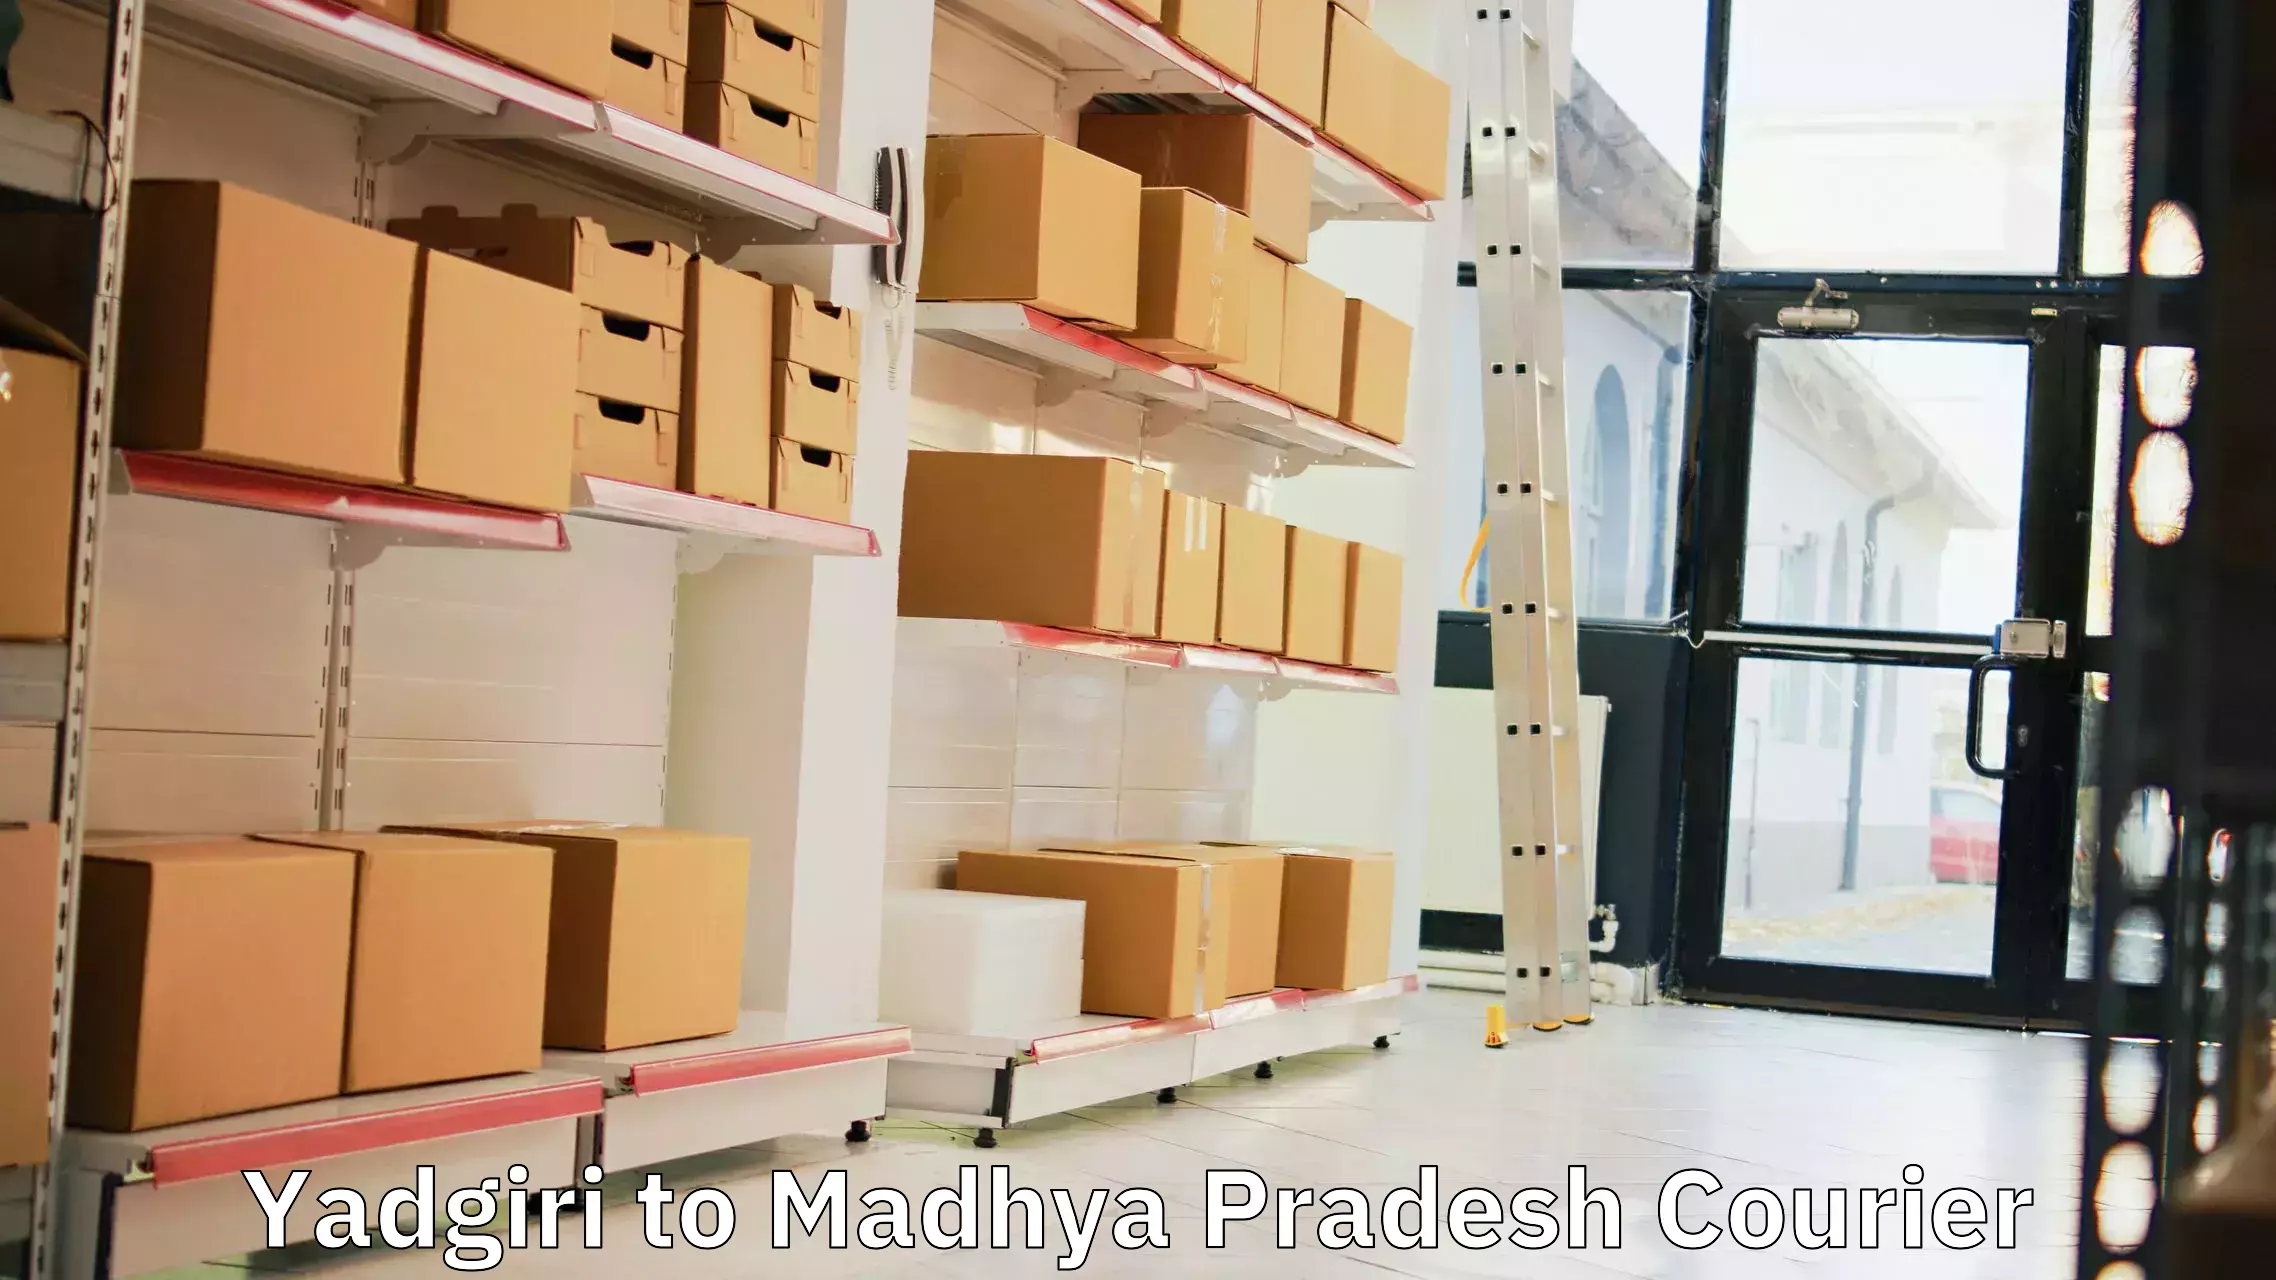 Bulk courier orders Yadgiri to Madhya Pradesh